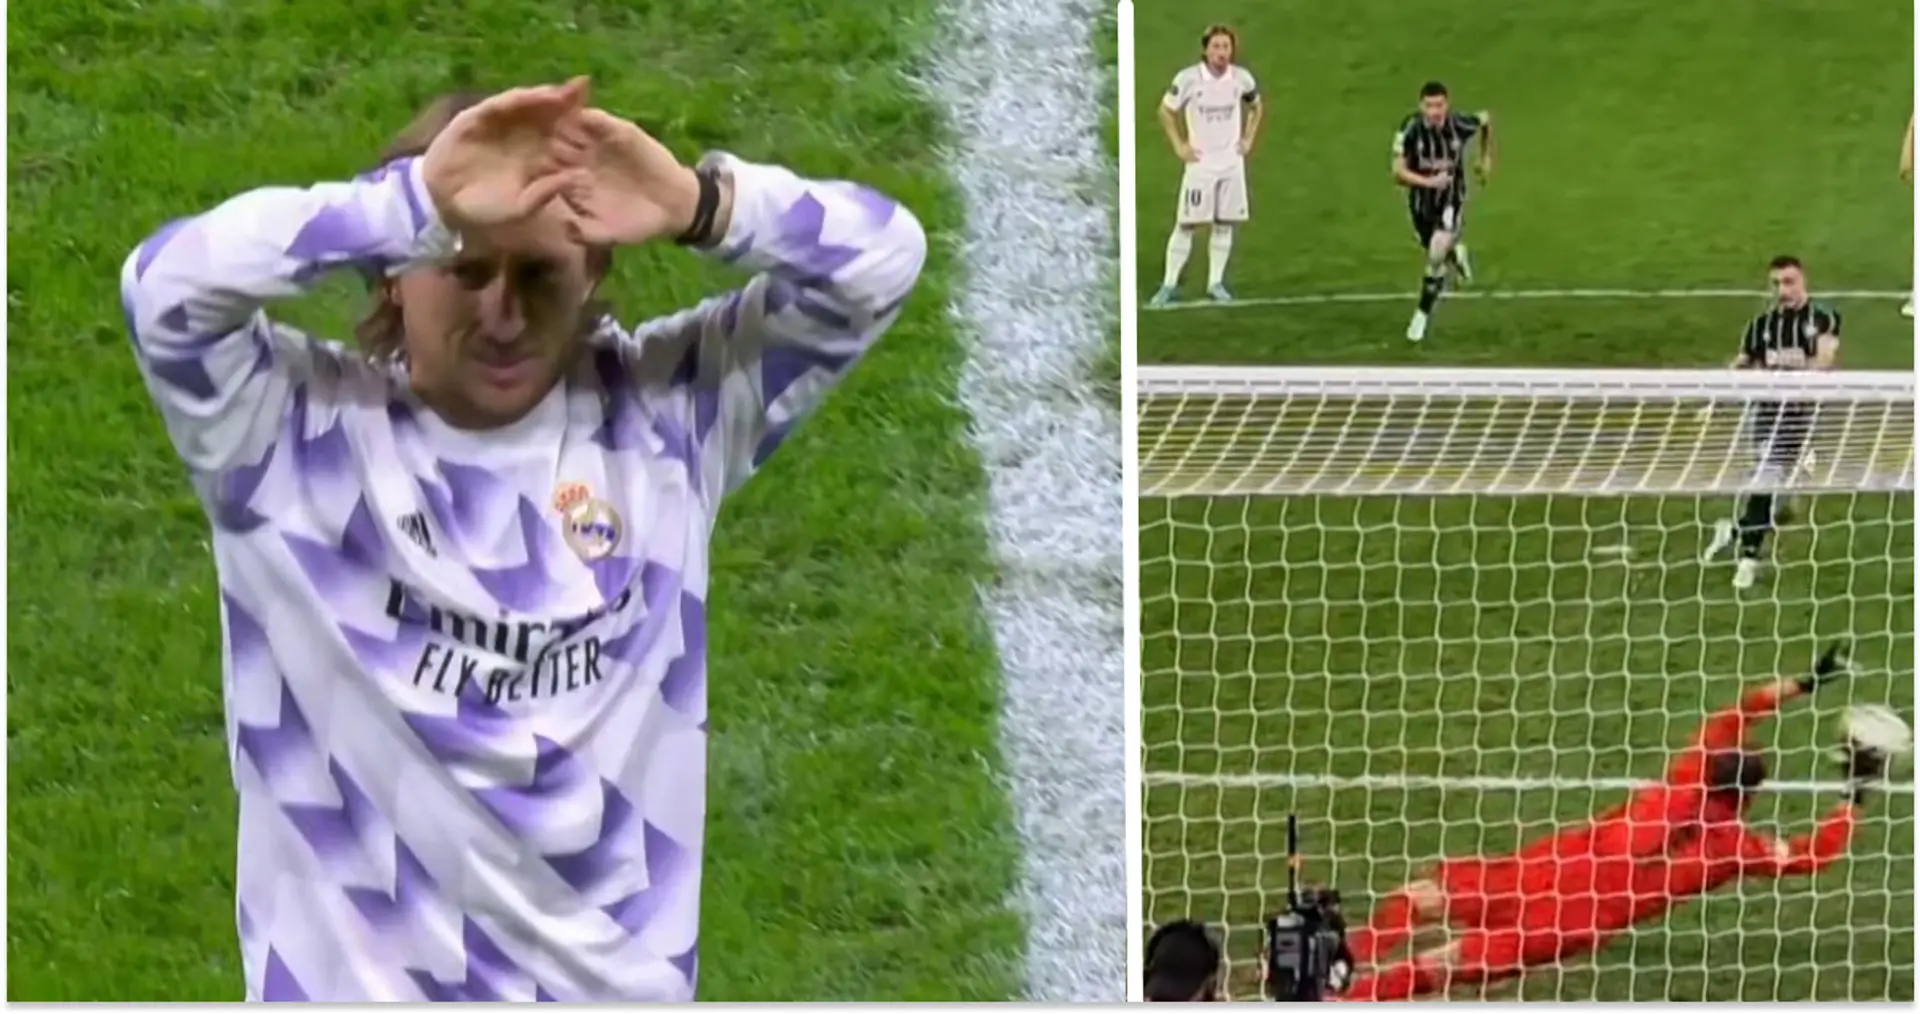 Le rôle de Modric sur le penalty stoppé par Courtois expliqué